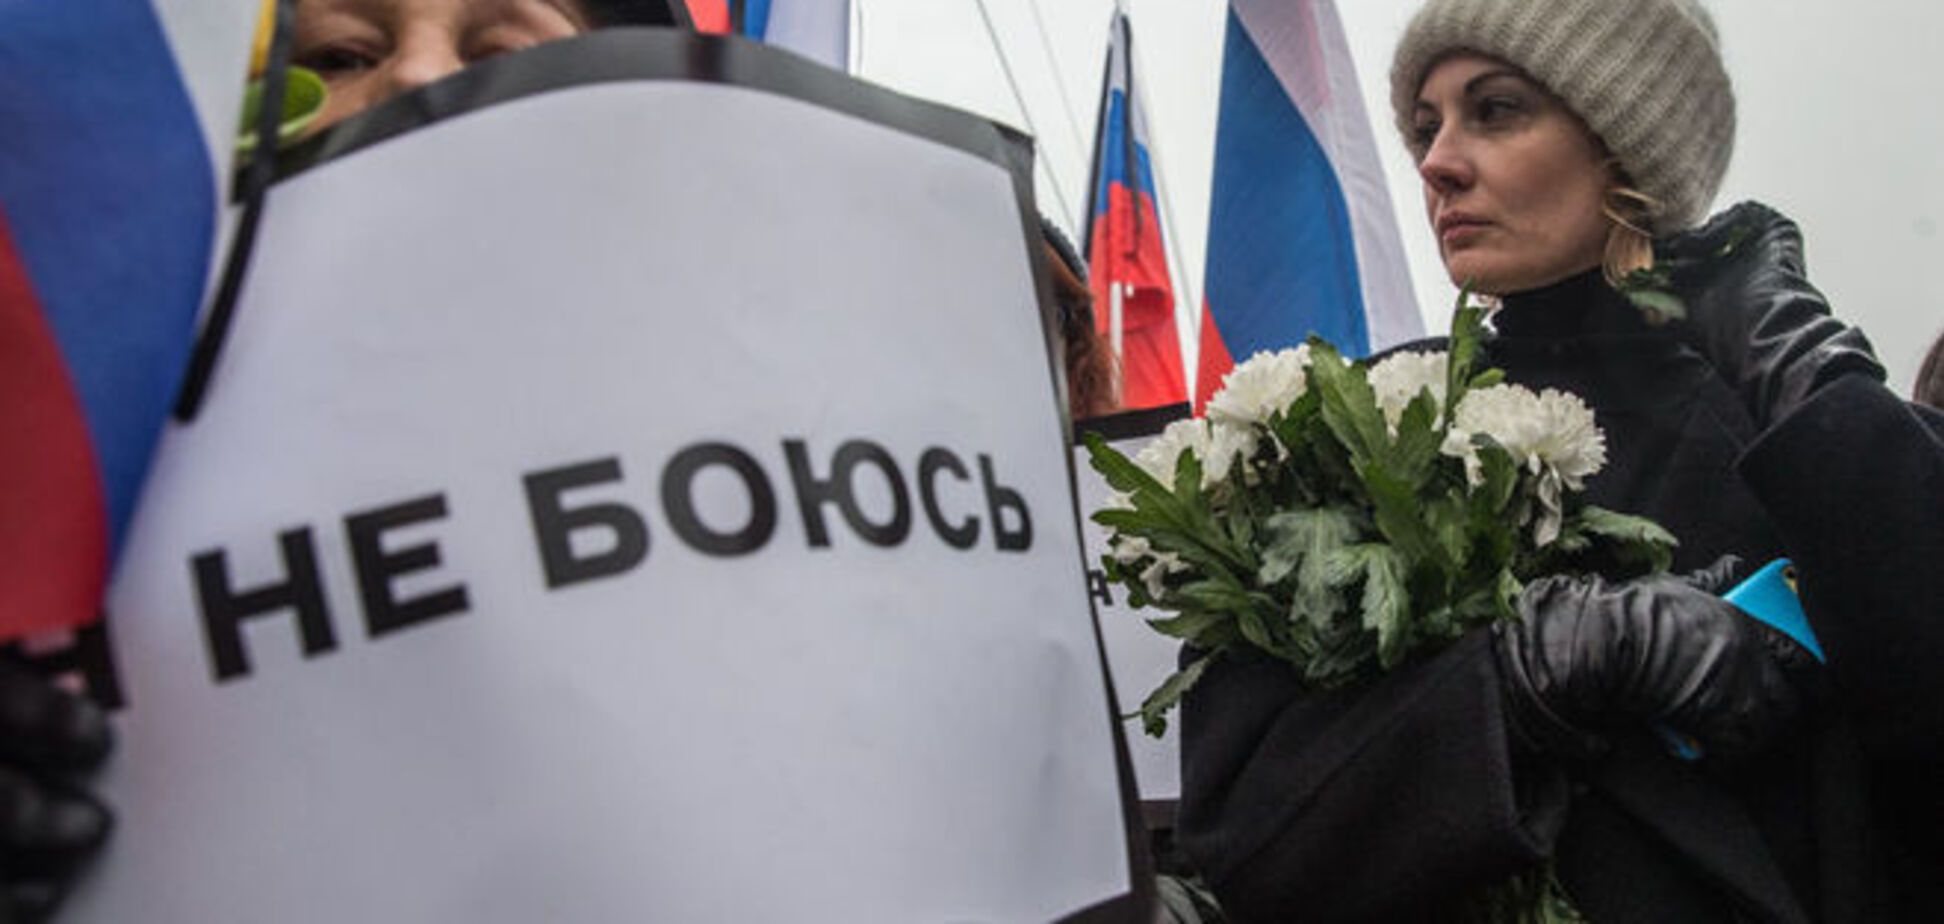 'Мы не боимся!' Как проходило шествие памяти Немцова в Москве: фоторепортаж